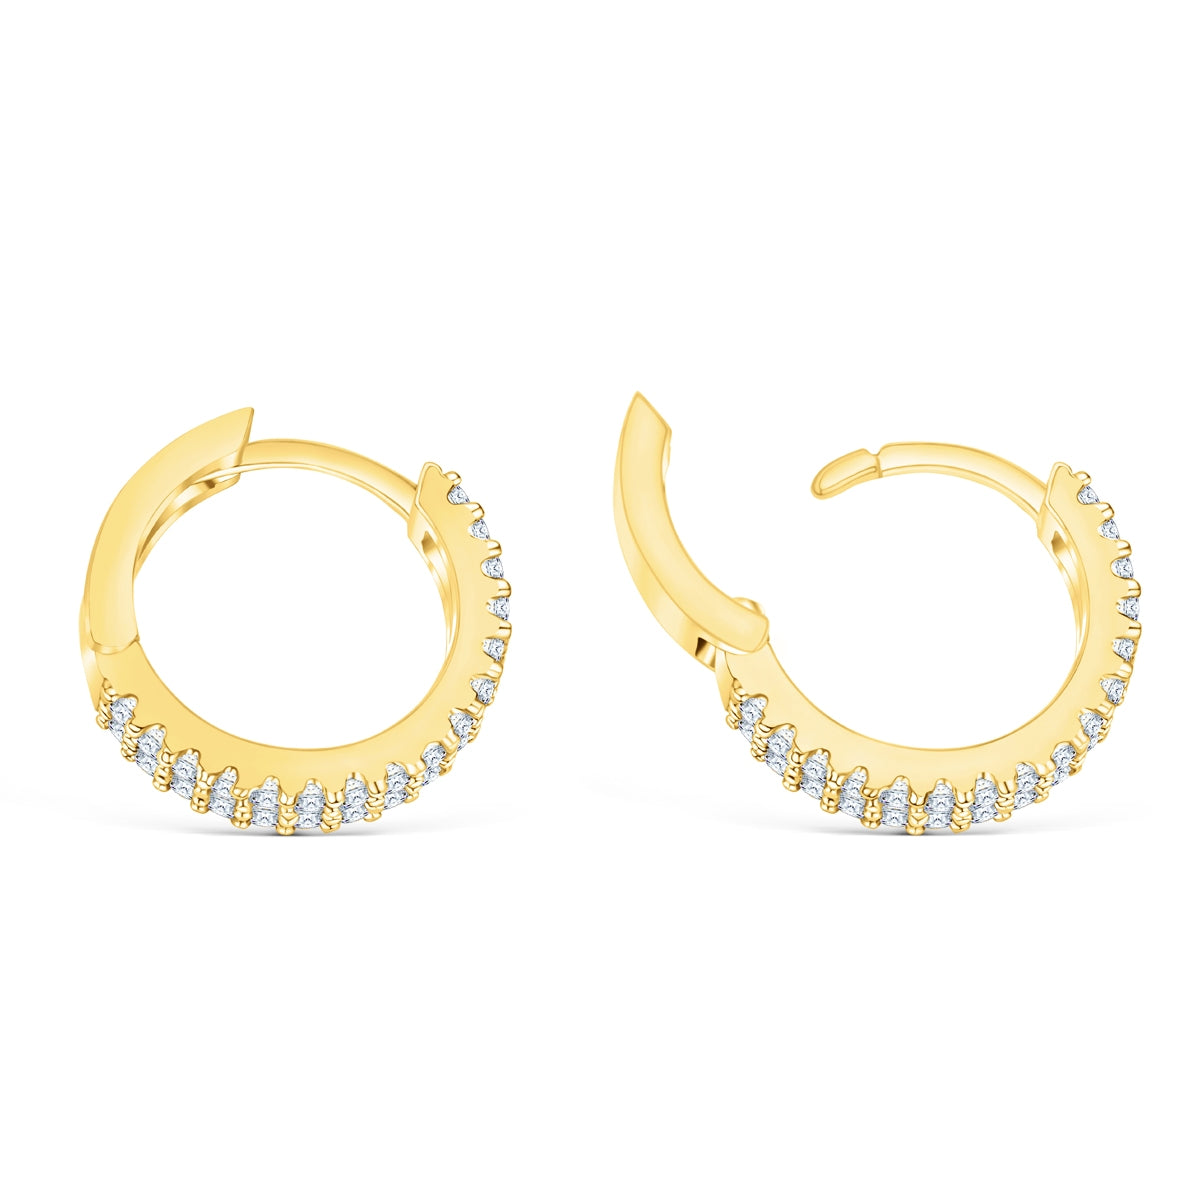 Shimmering gold hoop earrings 